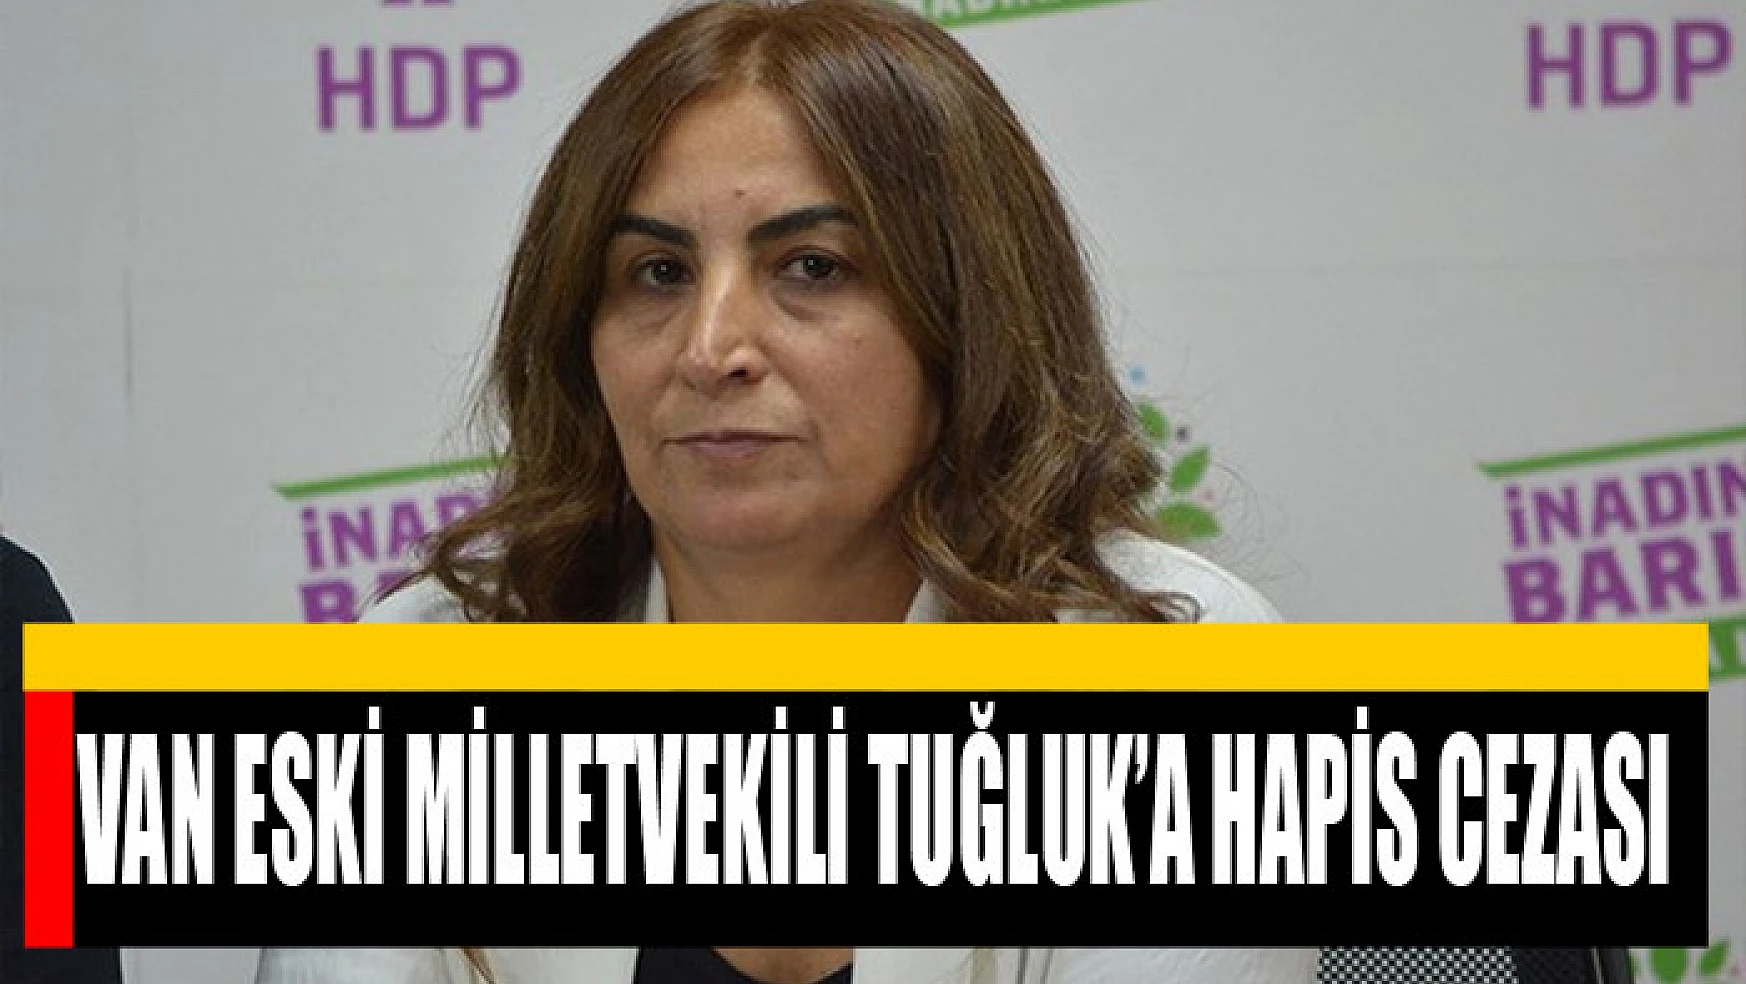 Van Eski Milletvekili Tuğluk'a hapis cezası